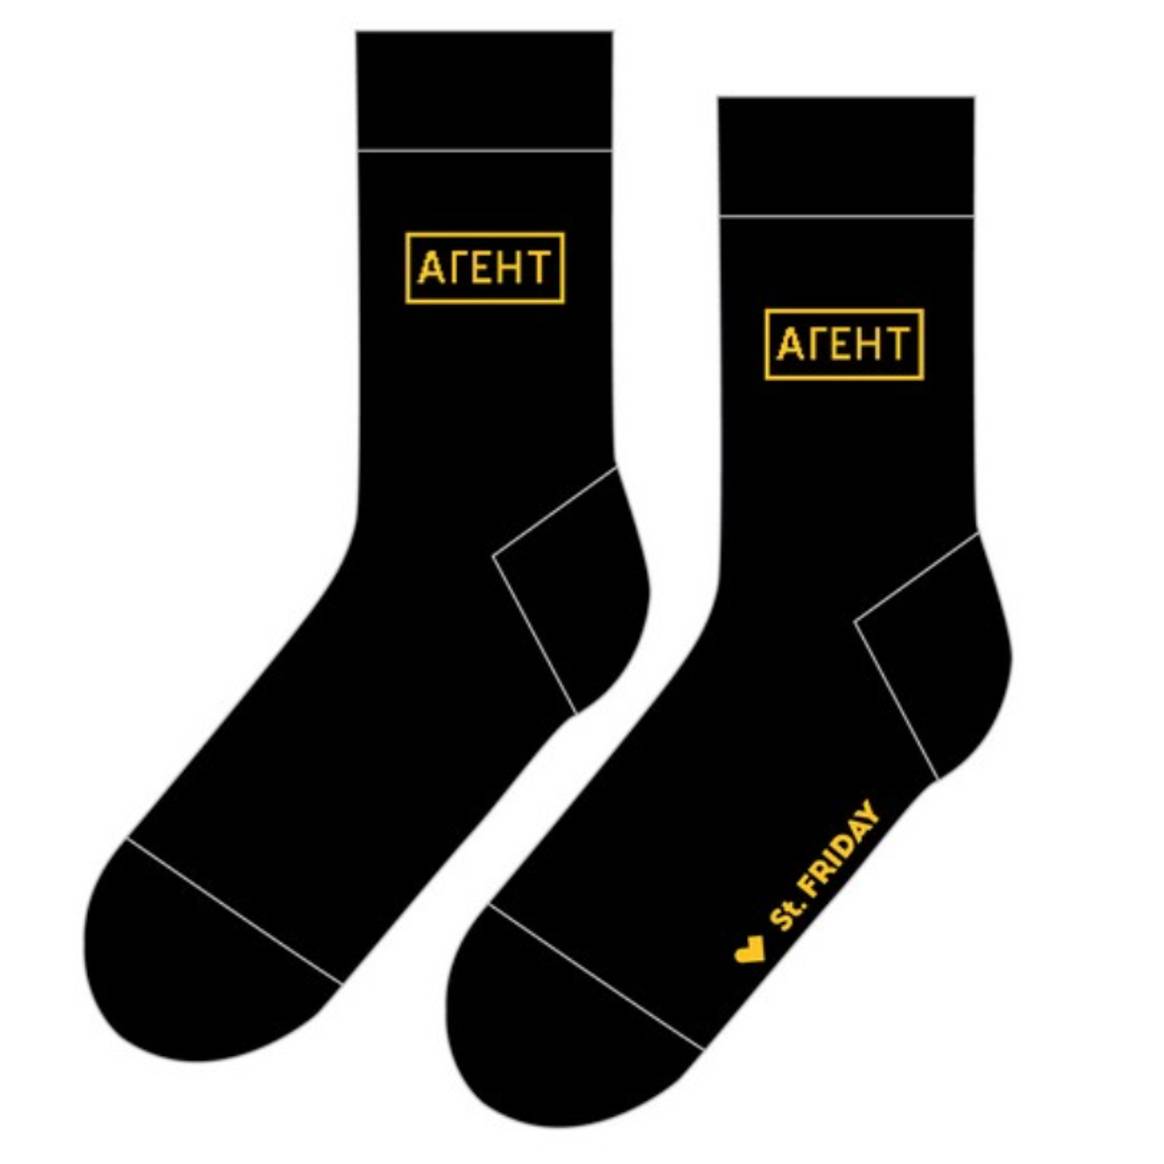 Бренд St.Friday Socks презентовал новую коллекцию дизайнерских мужских носков